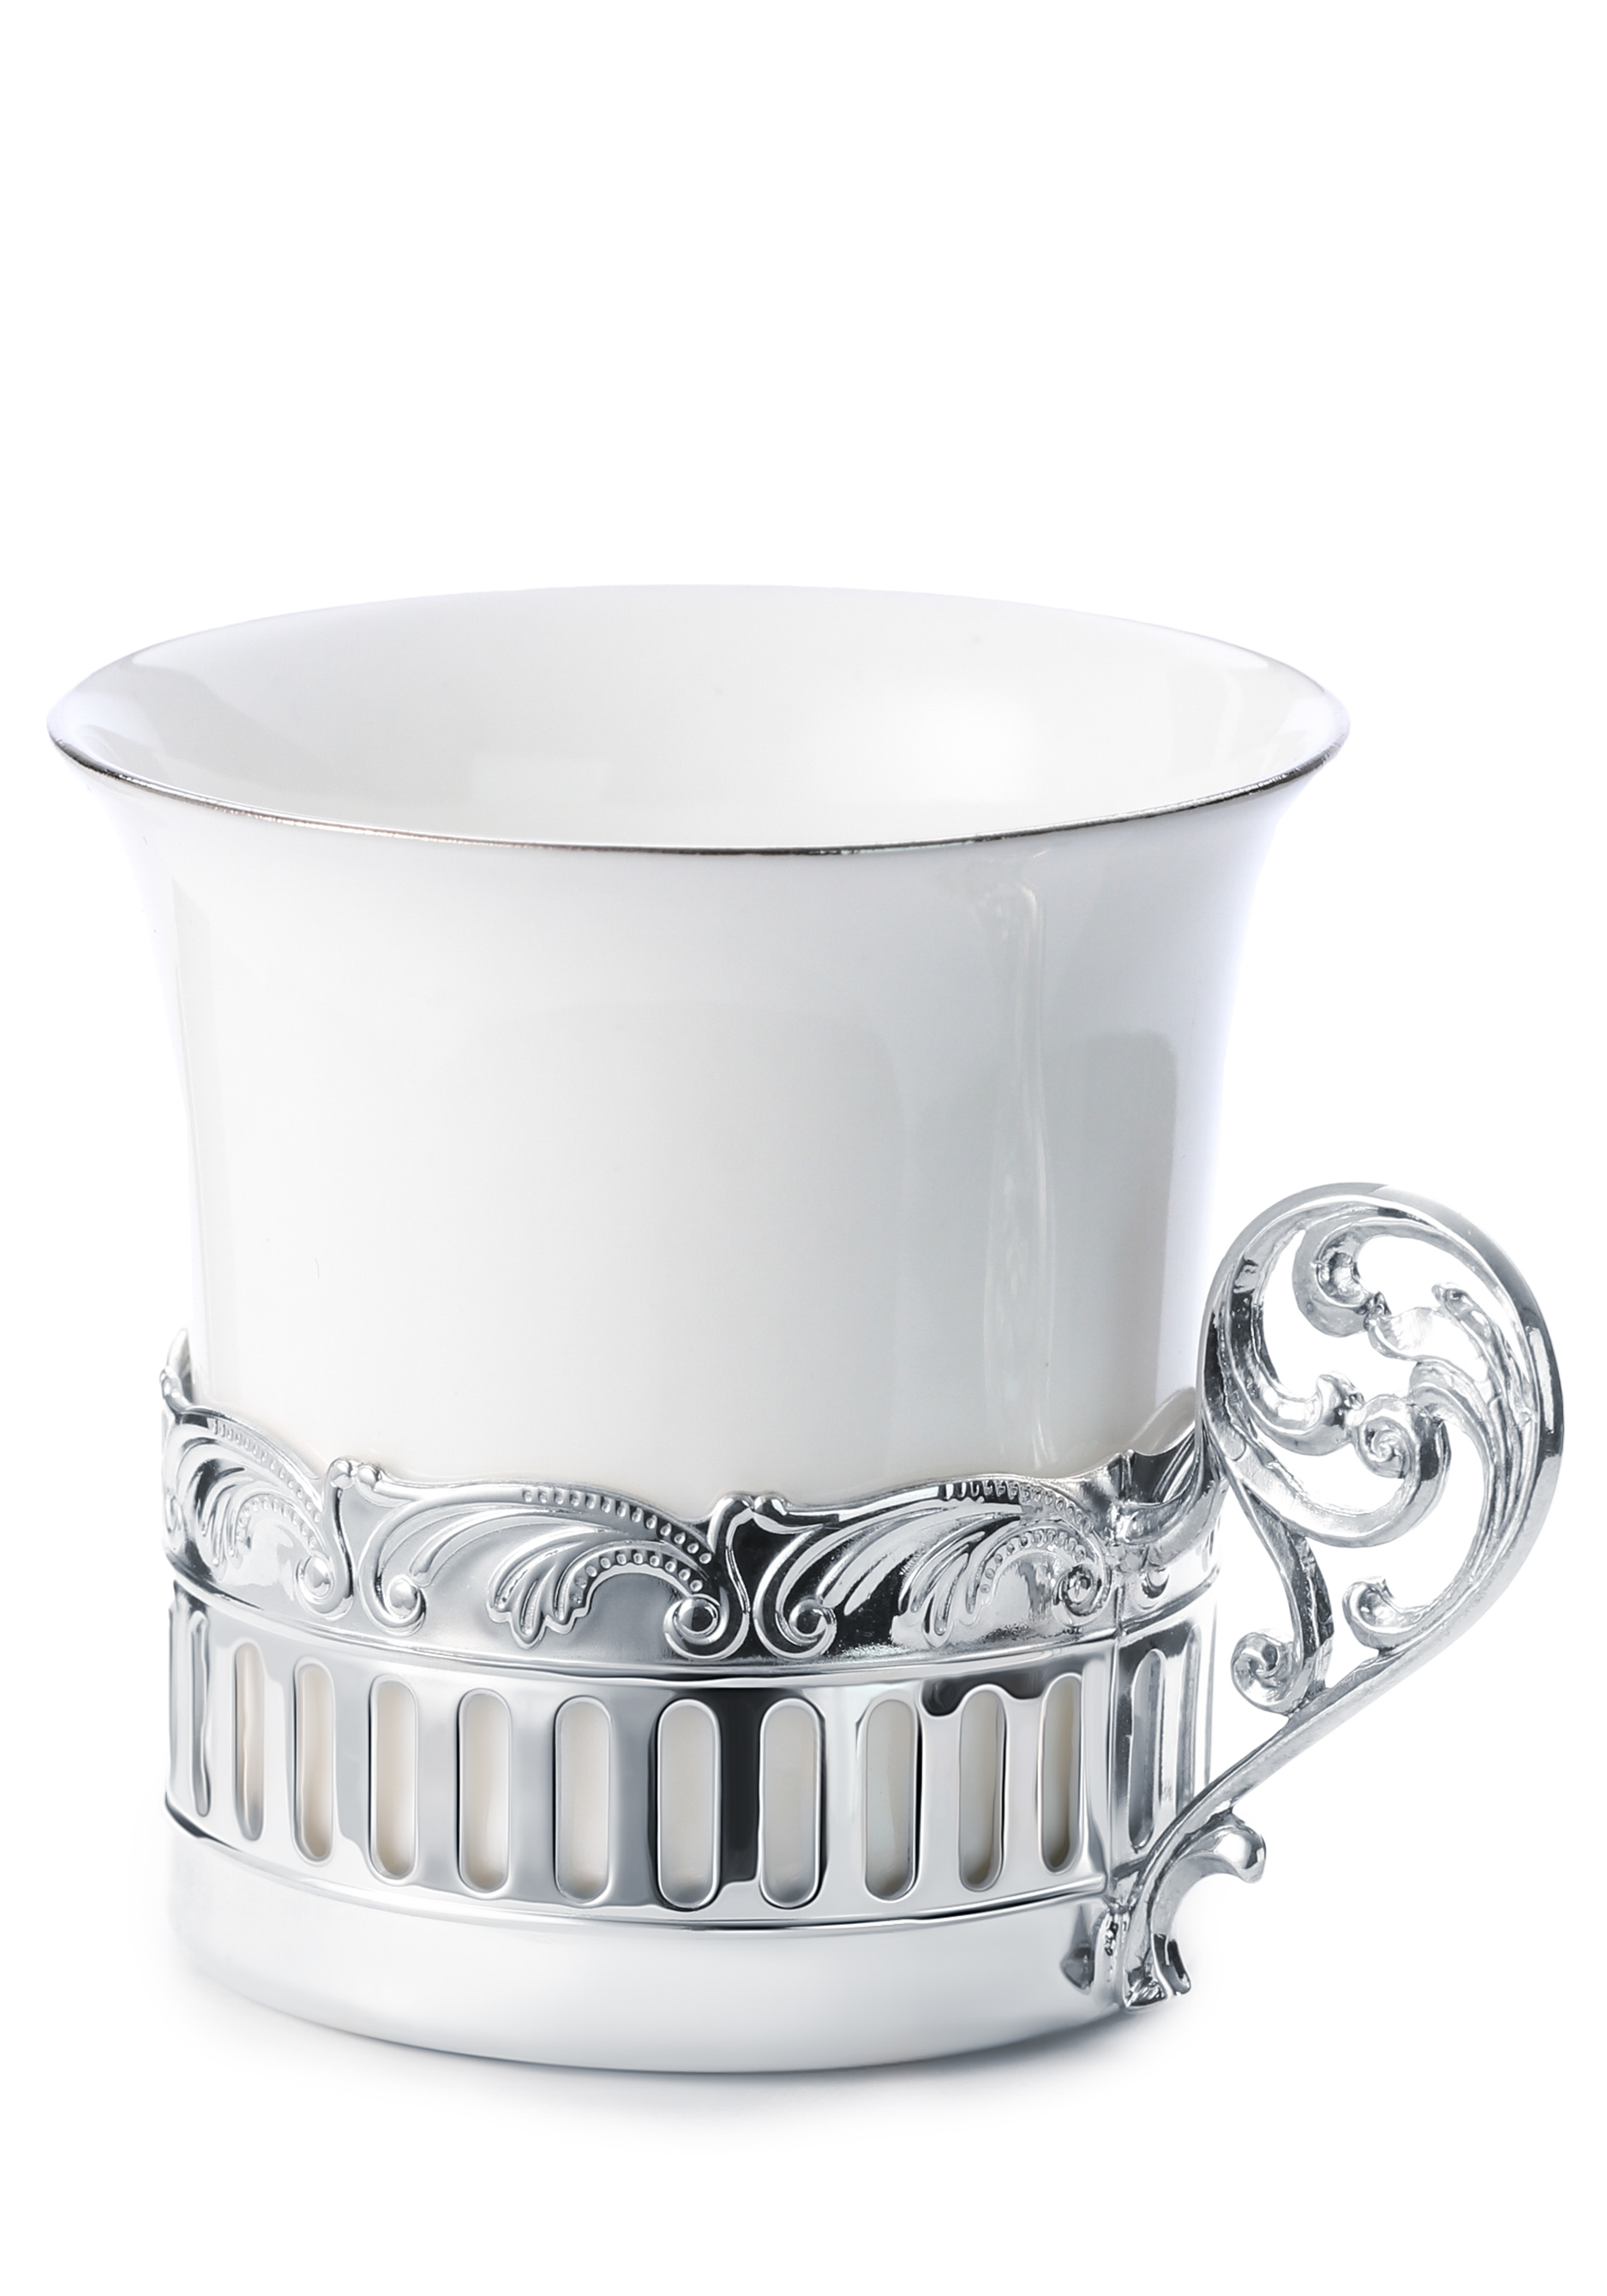 Кофейная чашка Богема фарфор, серебро чашка кофейная мокко 165мл башкирский фарфор